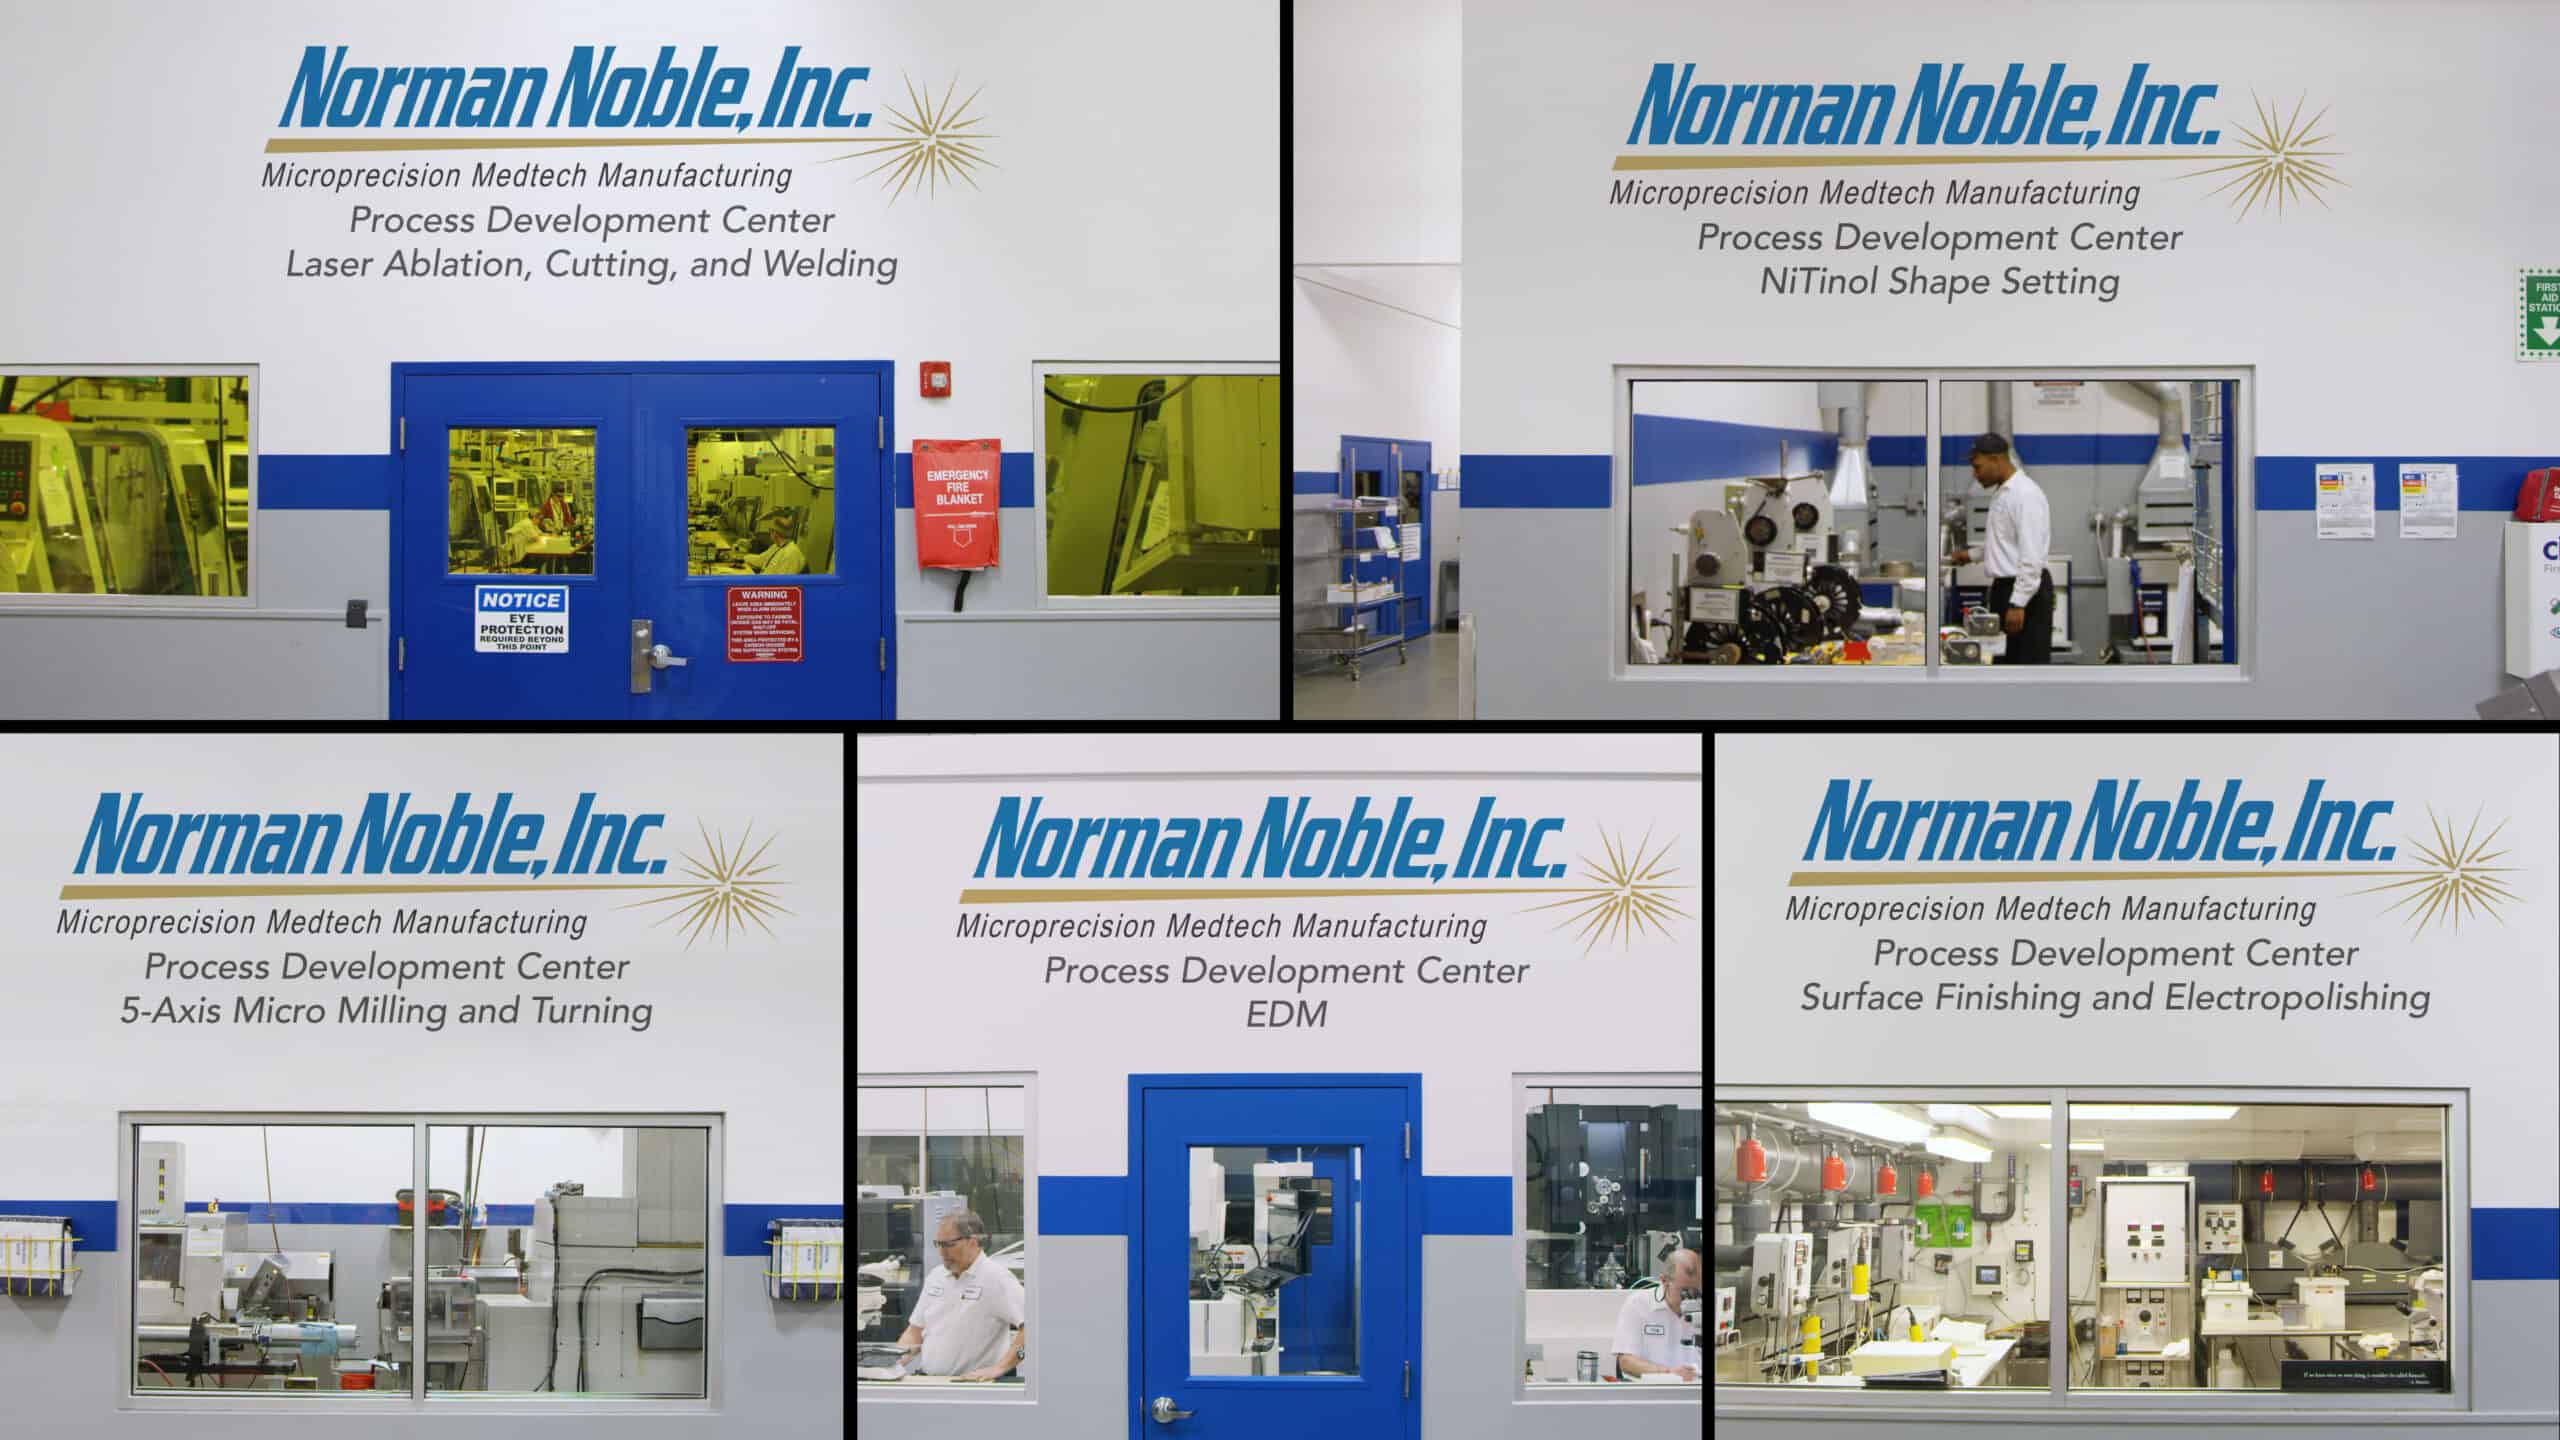 norman noble process development centers